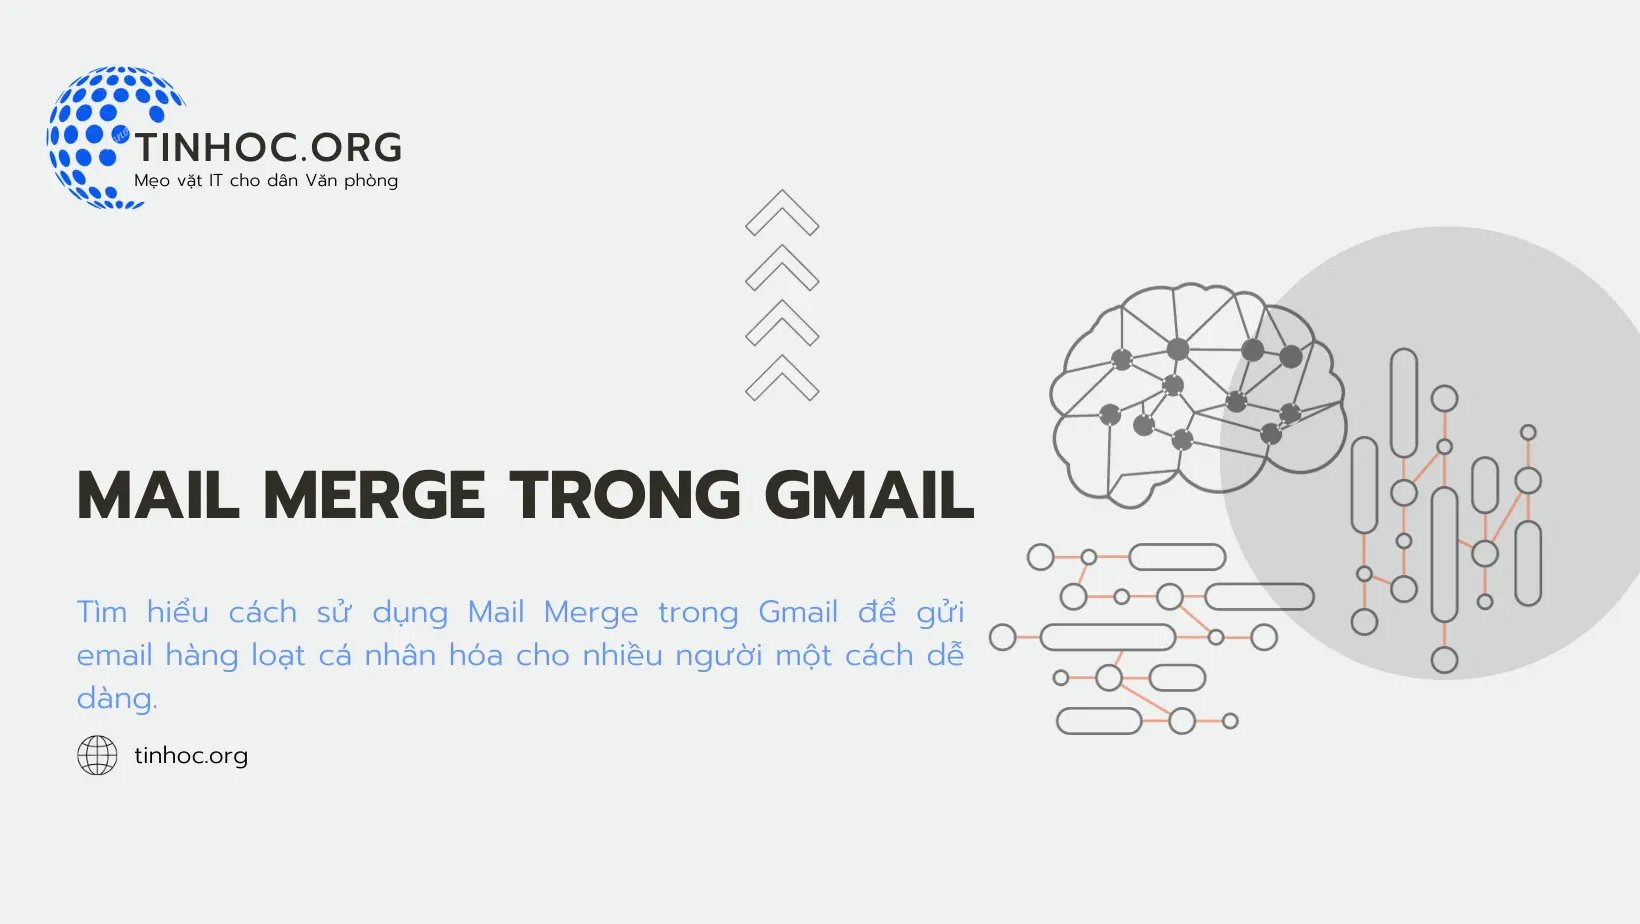 Tìm hiểu cách sử dụng Mail Merge trong Gmail để gửi email hàng loạt cá nhân hóa cho nhiều người một cách dễ dàng.